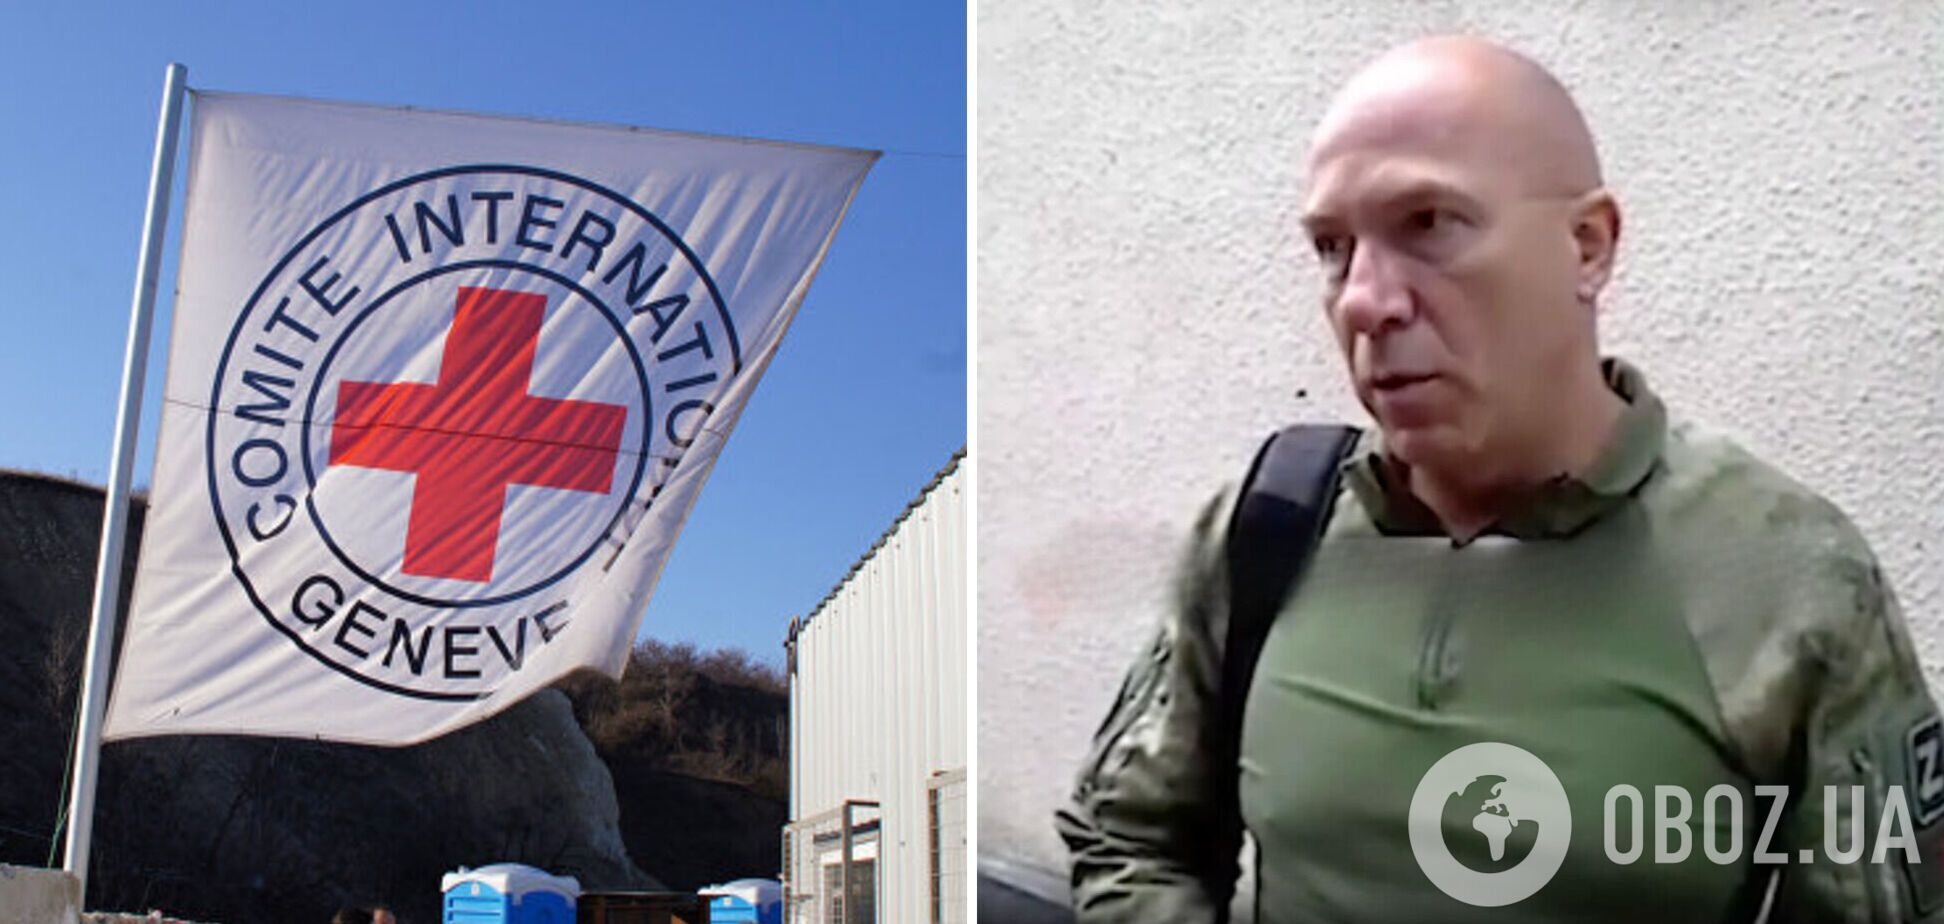 Генсек Красного креста Беларуси открыто поддерживает агрессию РФ против Украины: его требуют уволить. Фото